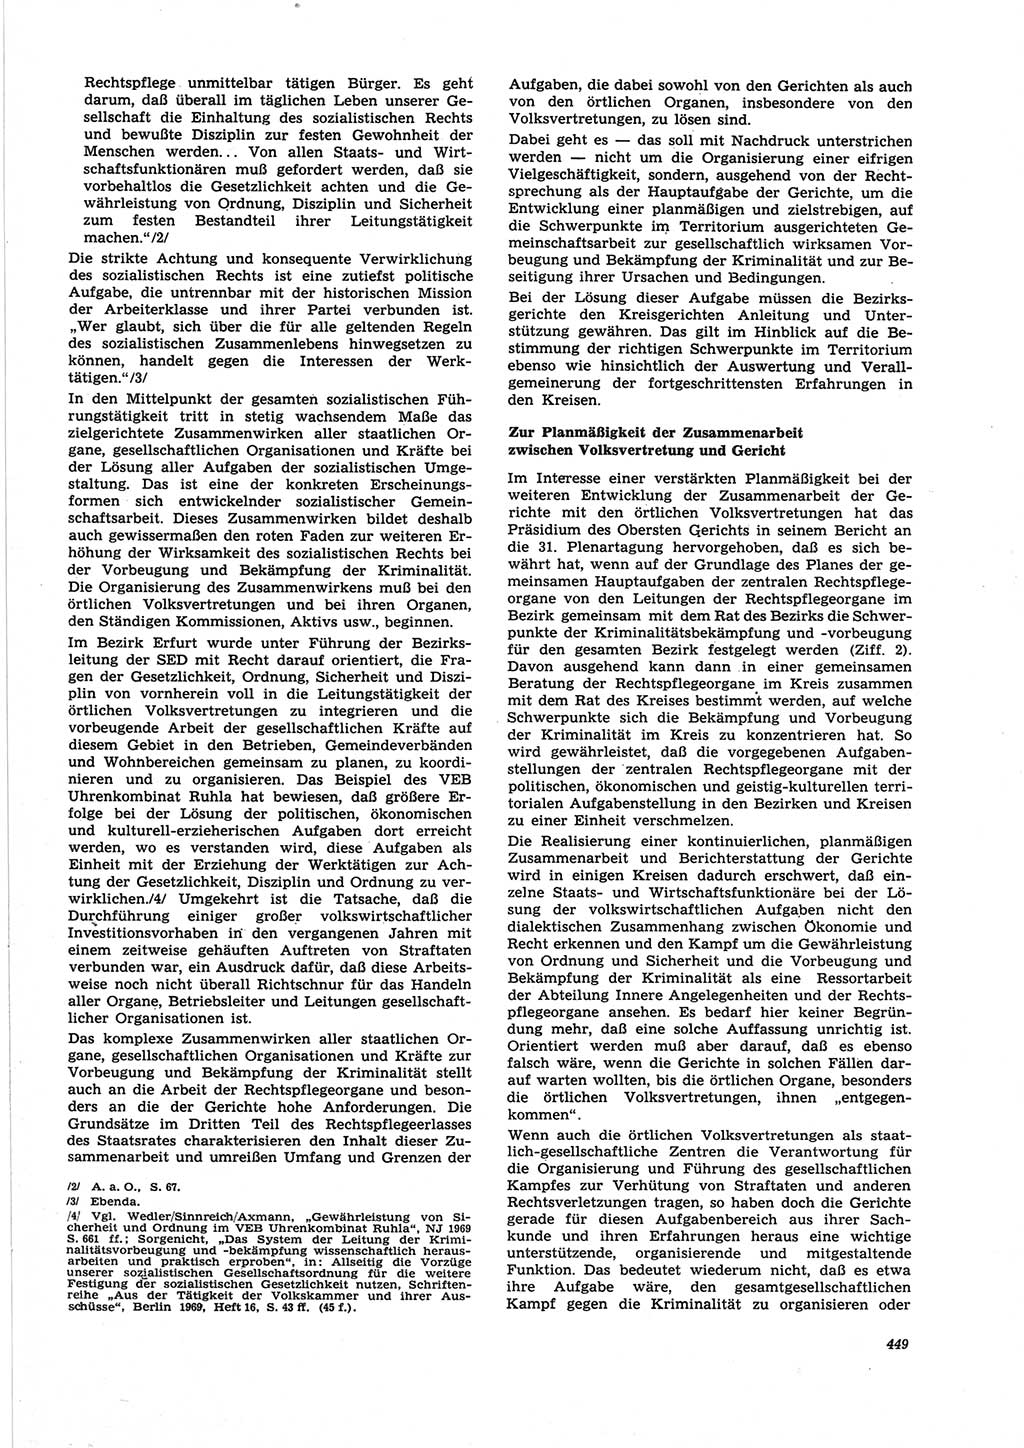 Neue Justiz (NJ), Zeitschrift für Recht und Rechtswissenschaft [Deutsche Demokratische Republik (DDR)], 25. Jahrgang 1971, Seite 449 (NJ DDR 1971, S. 449)